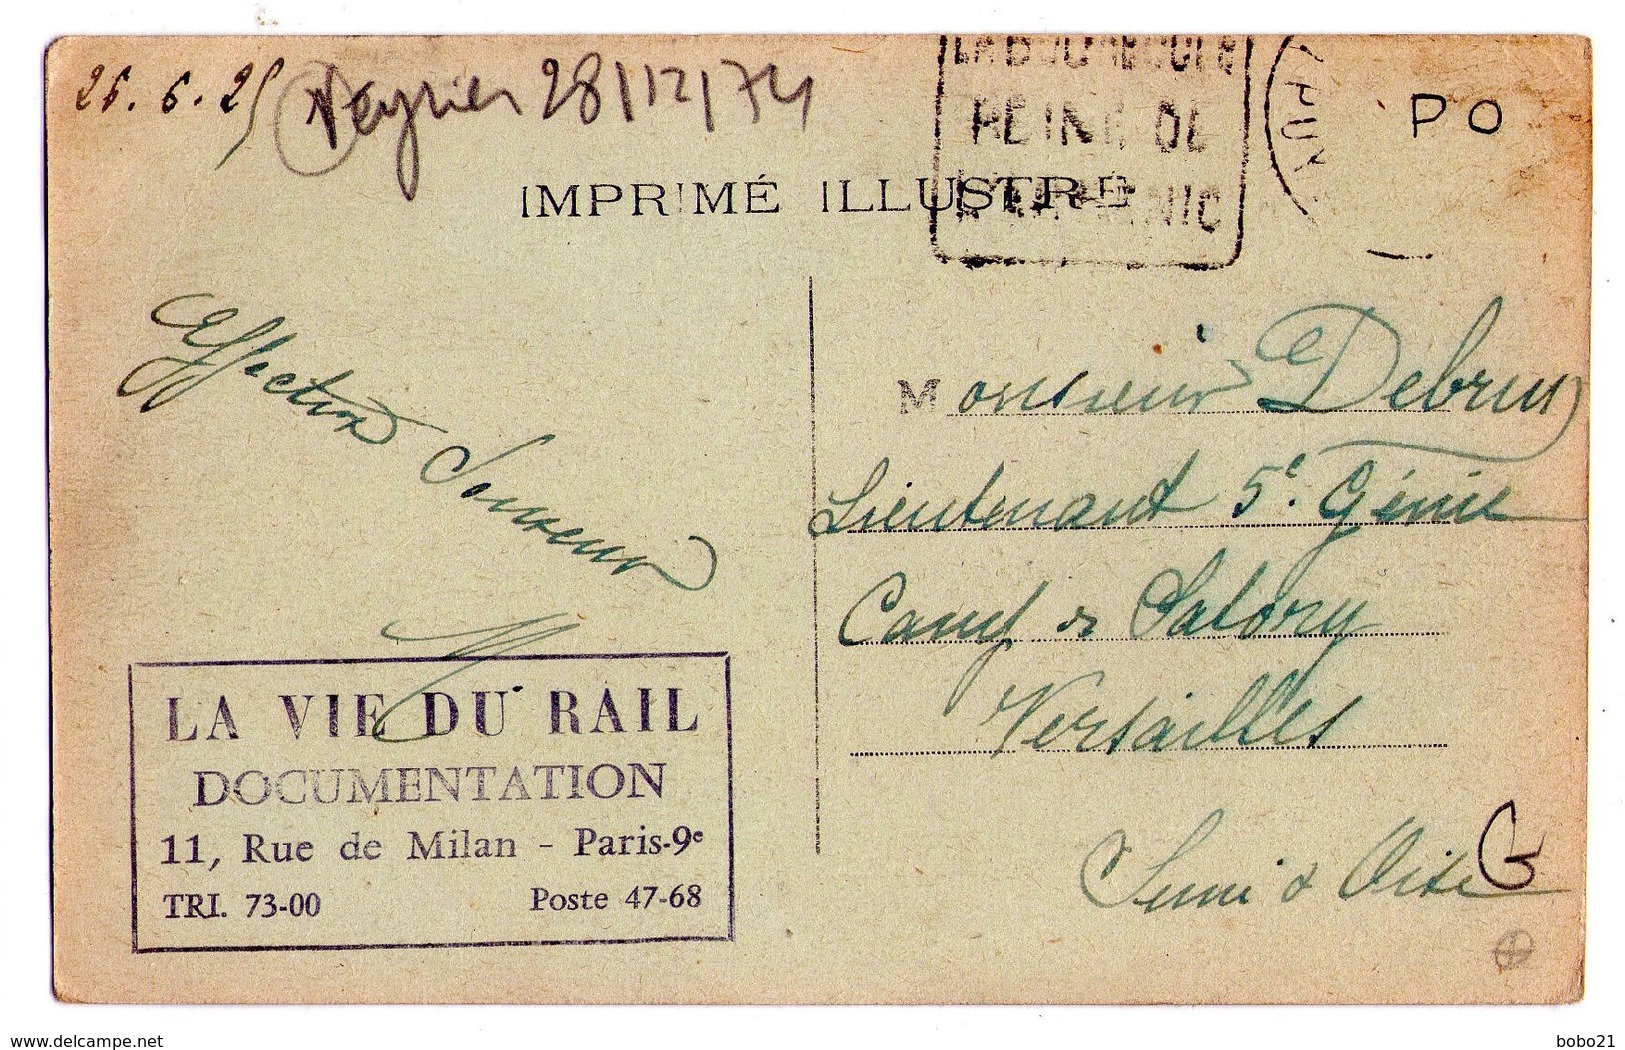 1858 - La Bourboule ( P. De D. ) - La Gare Et La Vallée Du Mont-Dore - L'Auvergne - N°254 - - Saint Gervais D'Auvergne